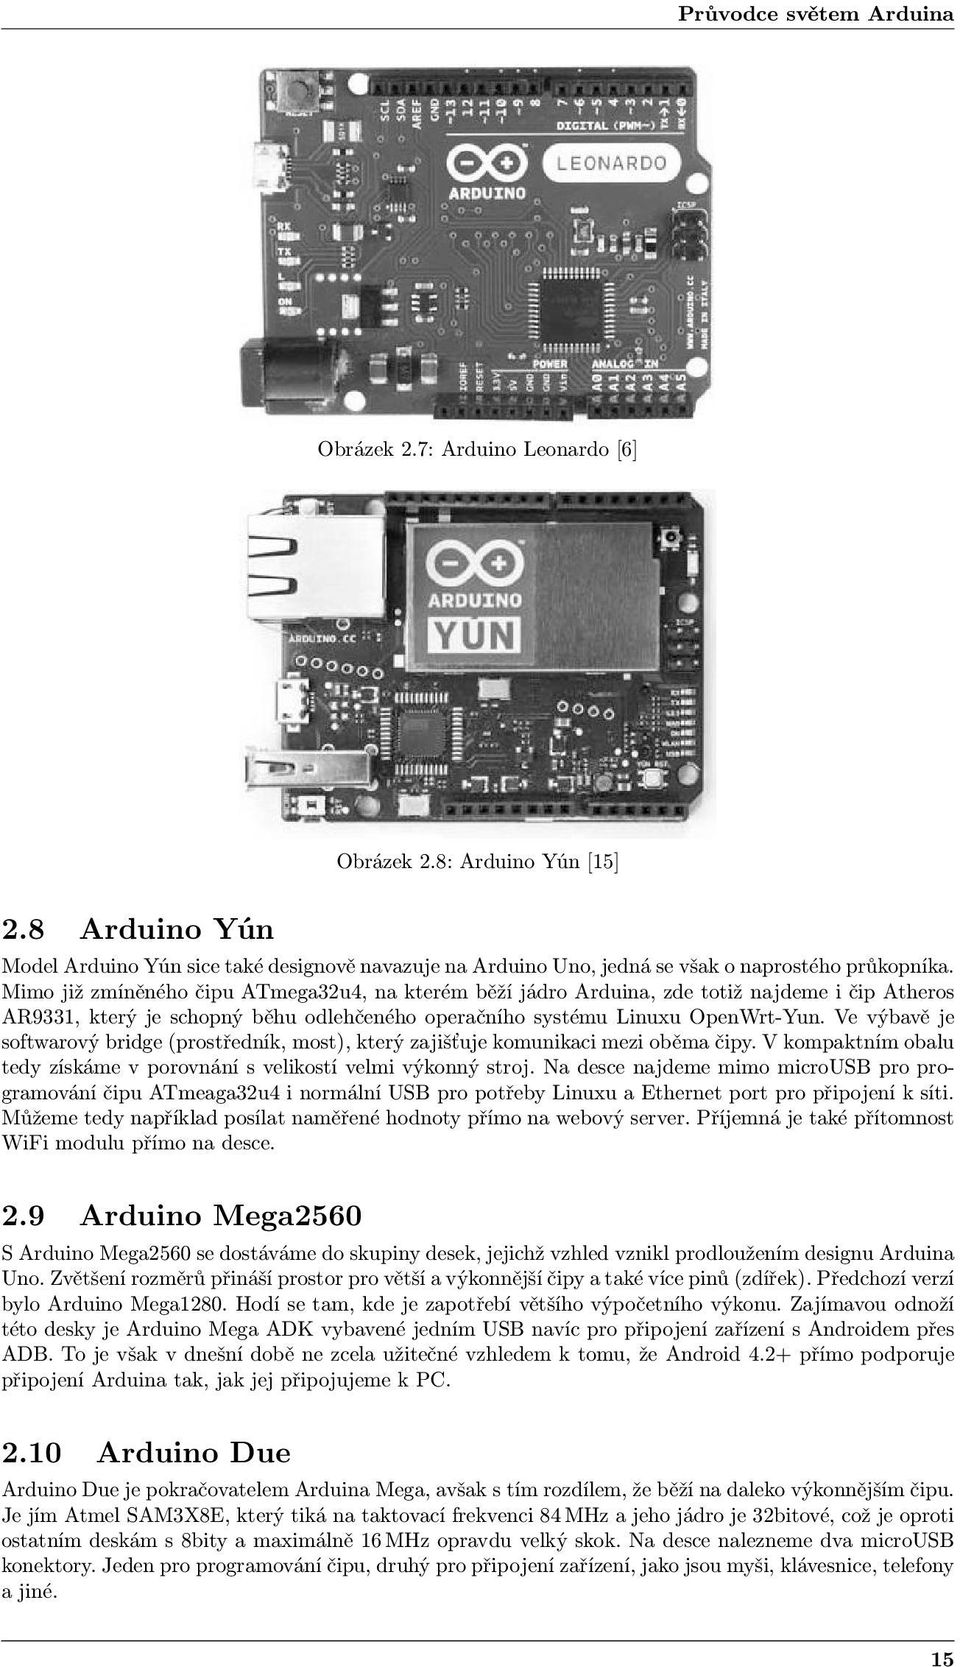 Mimo již zmíněného čipu ATmega32u4, na kterém běží jádro Arduina, zde totiž najdeme i čip Atheros AR9331, který je schopný běhu odlehčeného operačního systému Linuxu OpenWrt-Yun.